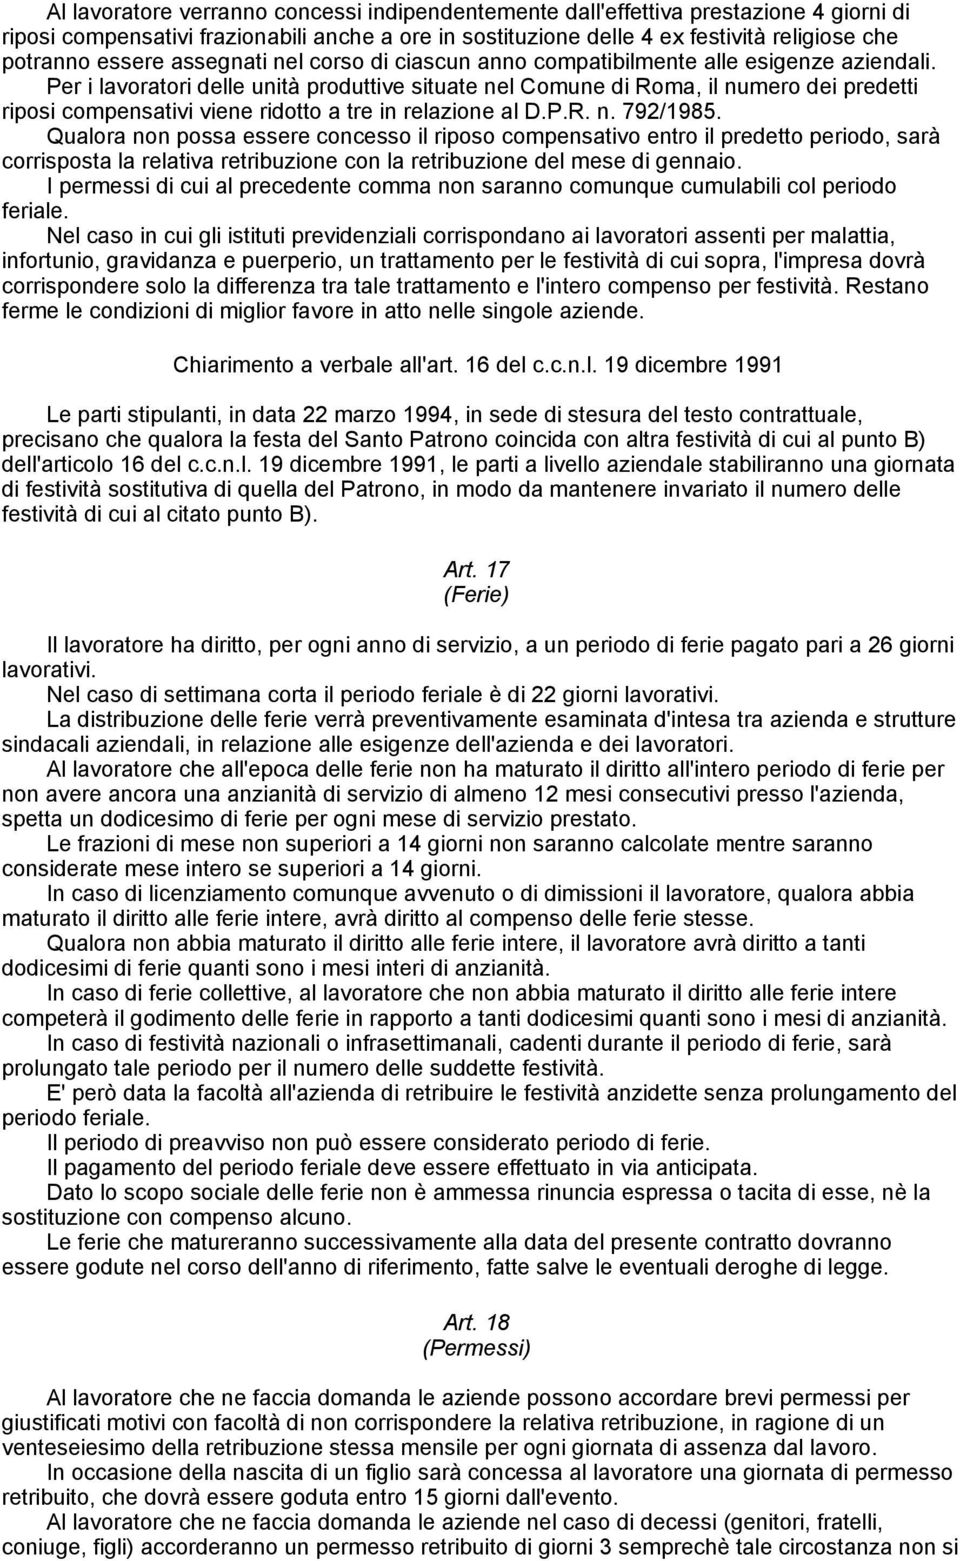 Per i lavoratori delle unità produttive situate nel Comune di Roma, il numero dei predetti riposi compensativi viene ridotto a tre in relazione al D.P.R. n. 792/1985.